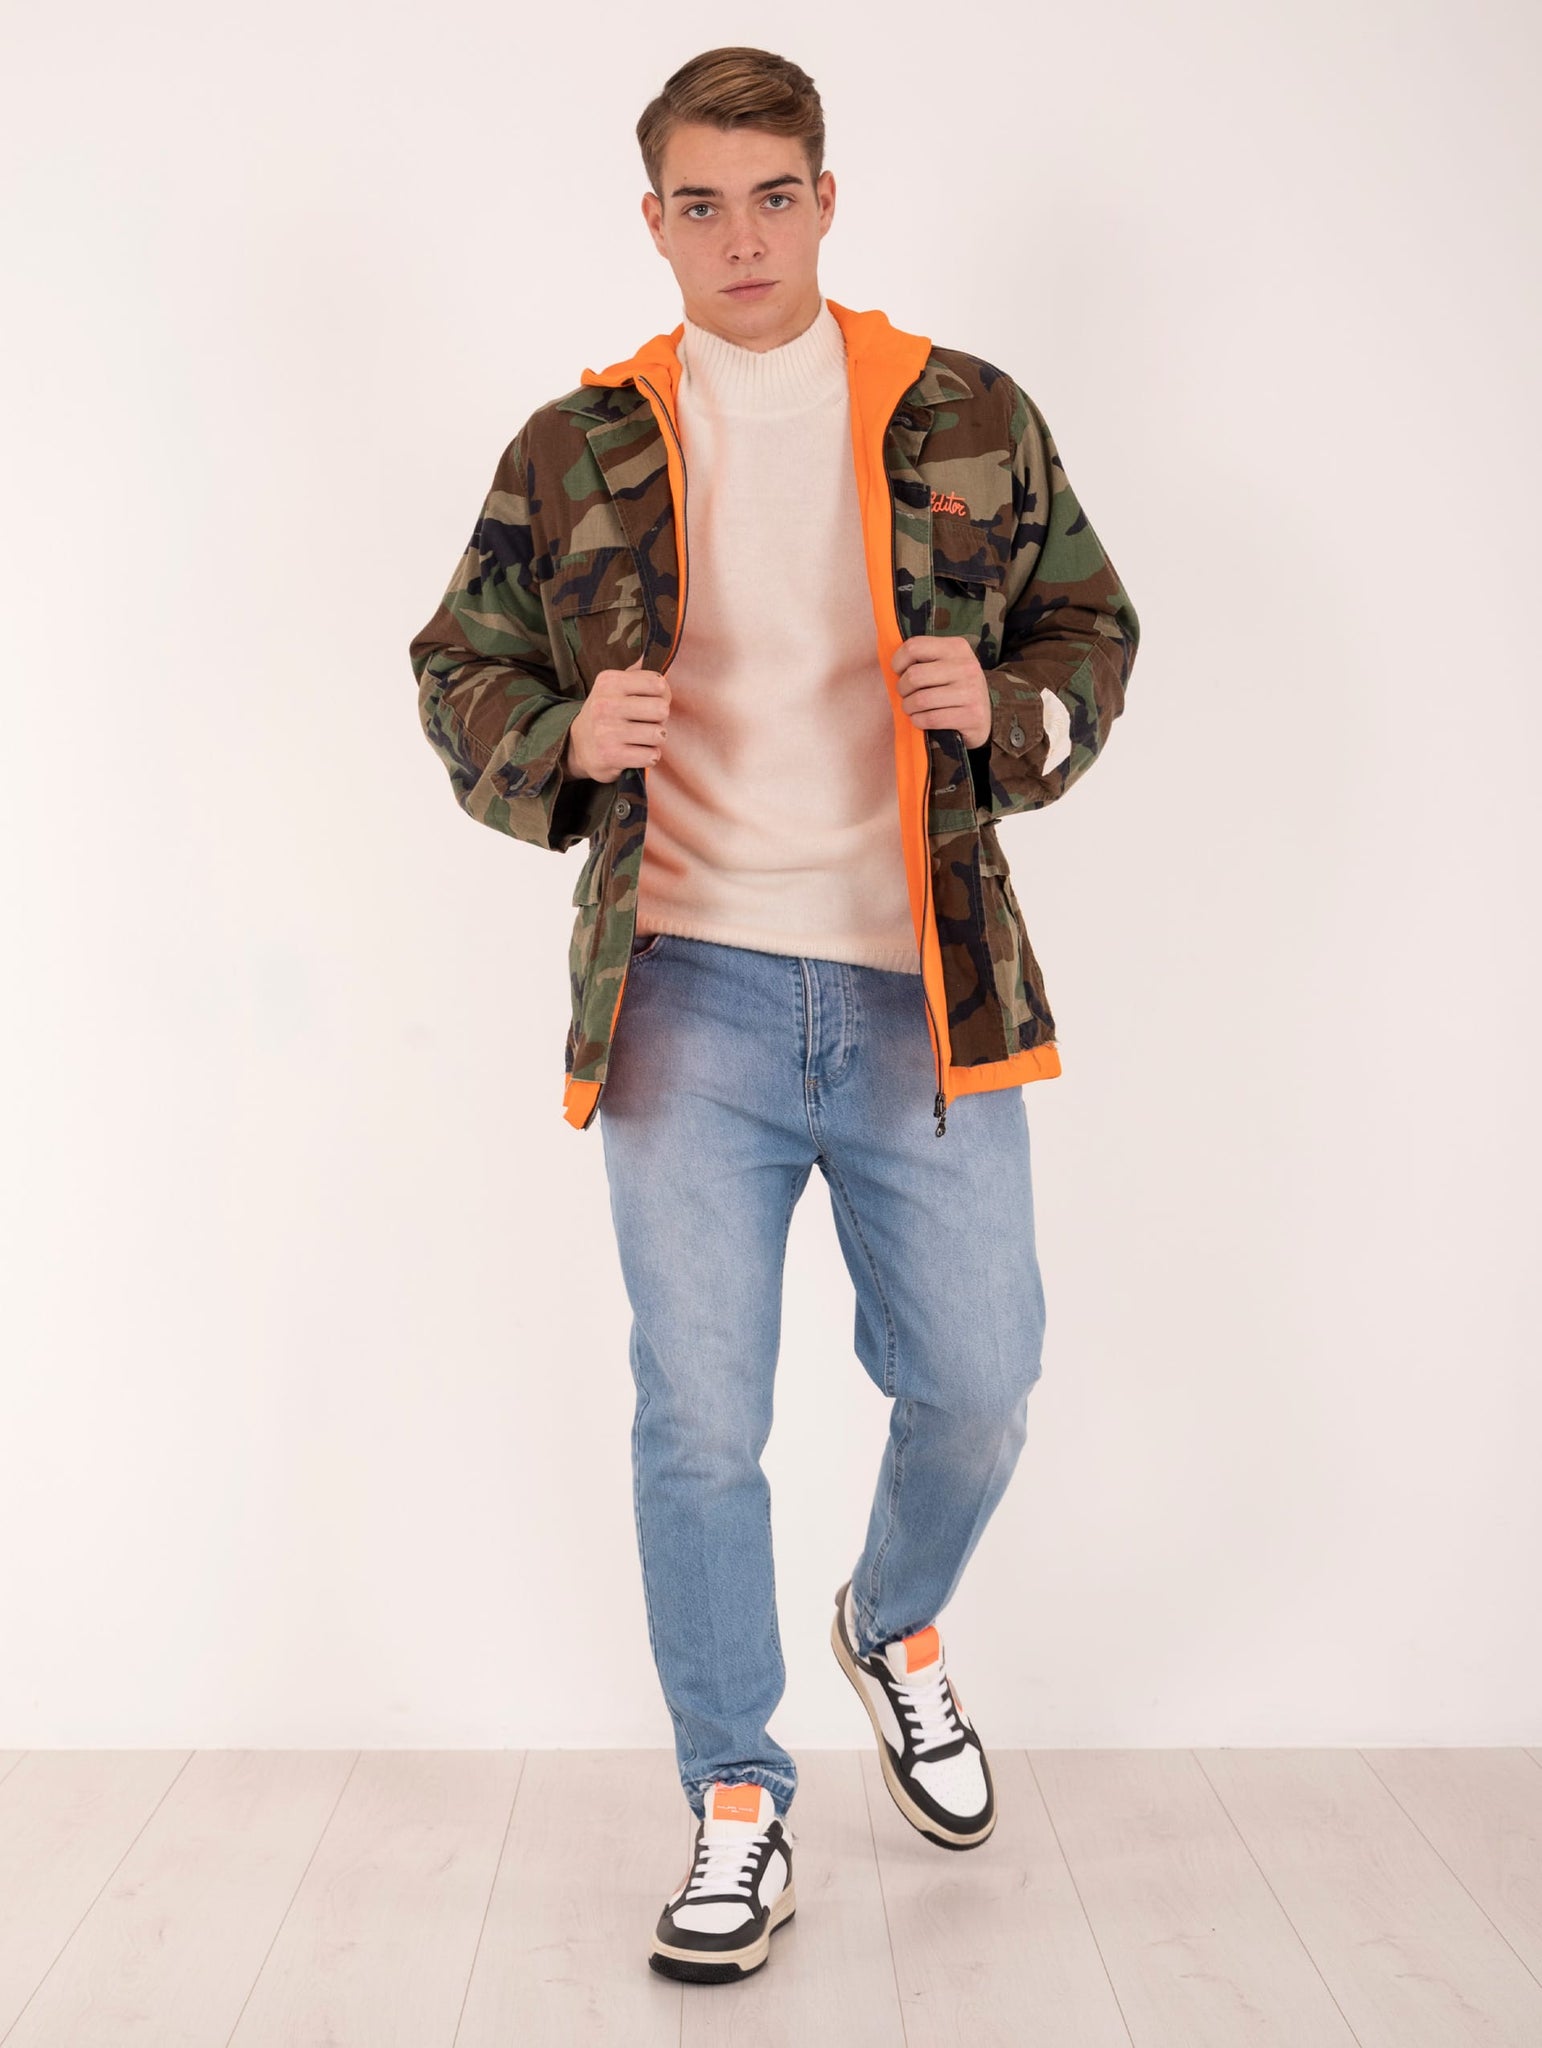 Field Jacket con Felpa The Editor in Cotone Camouflage e Arancione